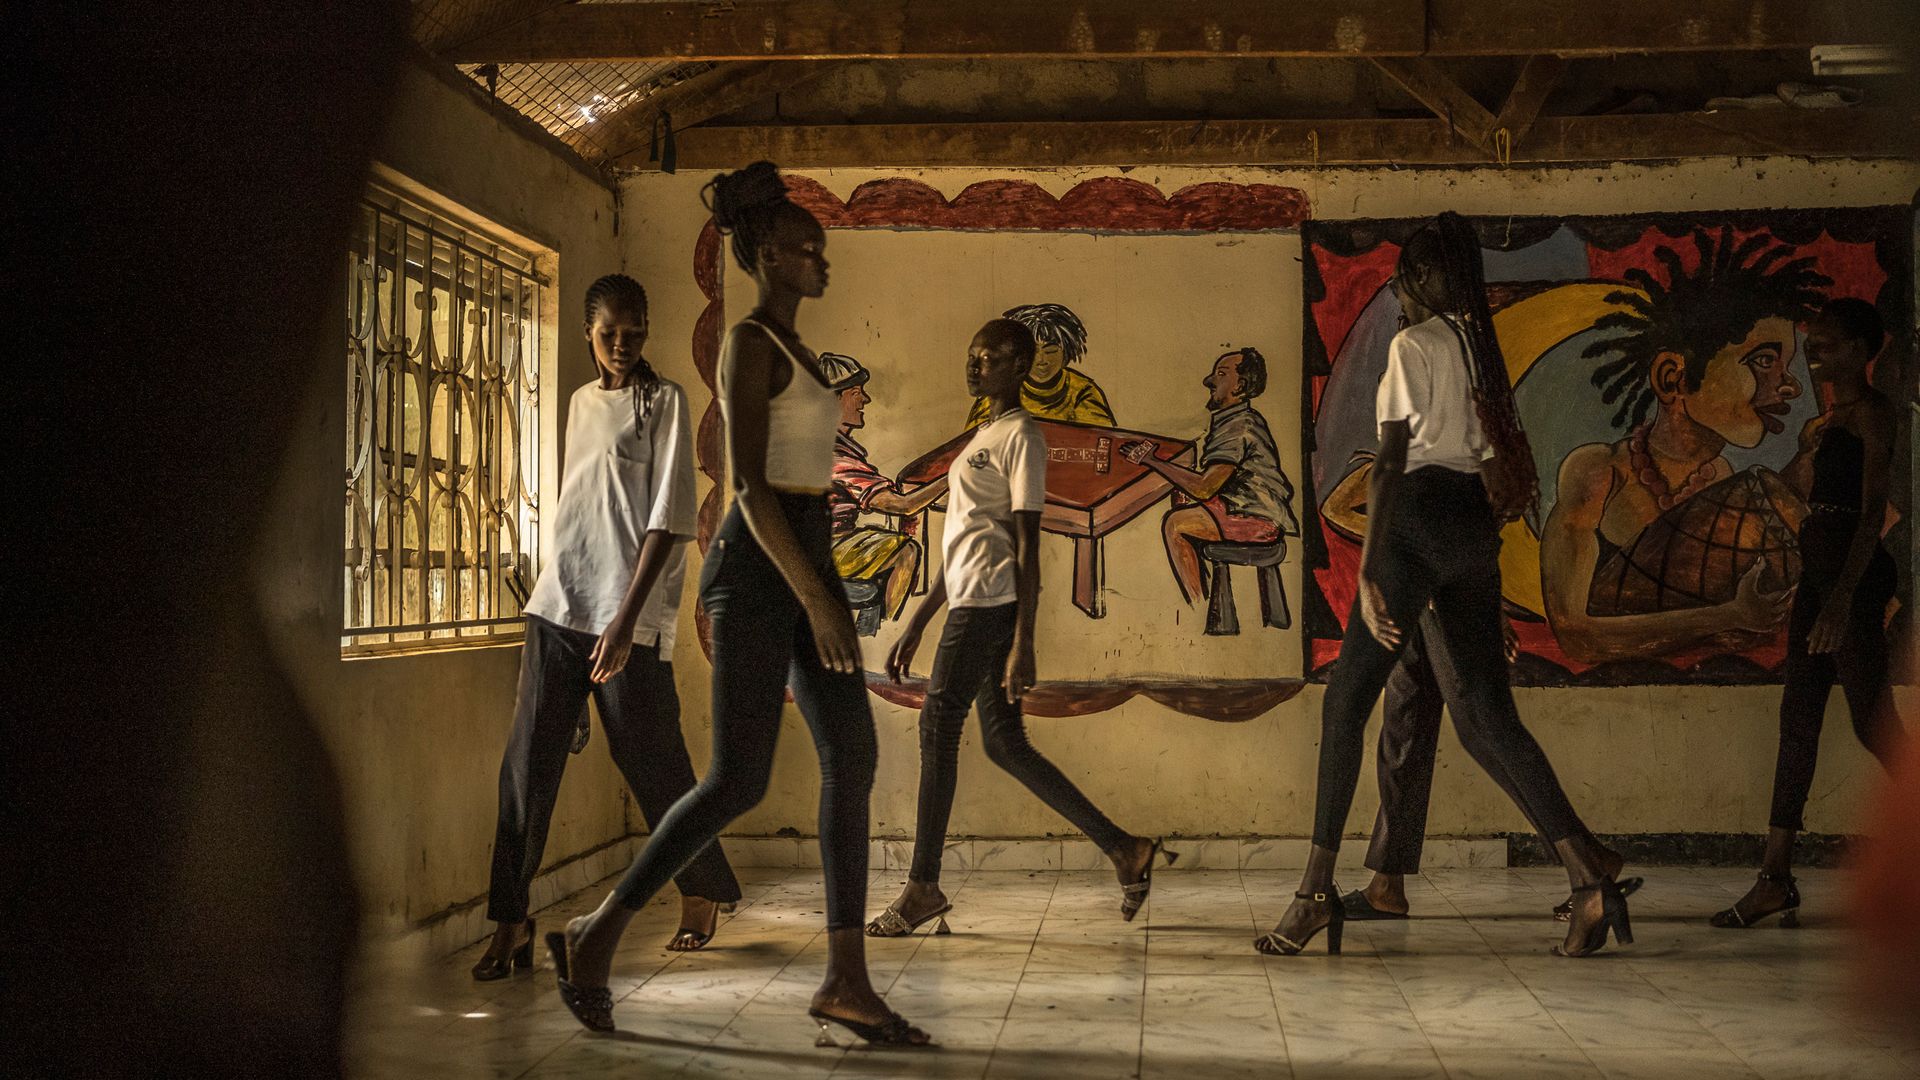 kenia: modelcasting in flüchtlingscamp - von der lehmhütte auf den laufsteg